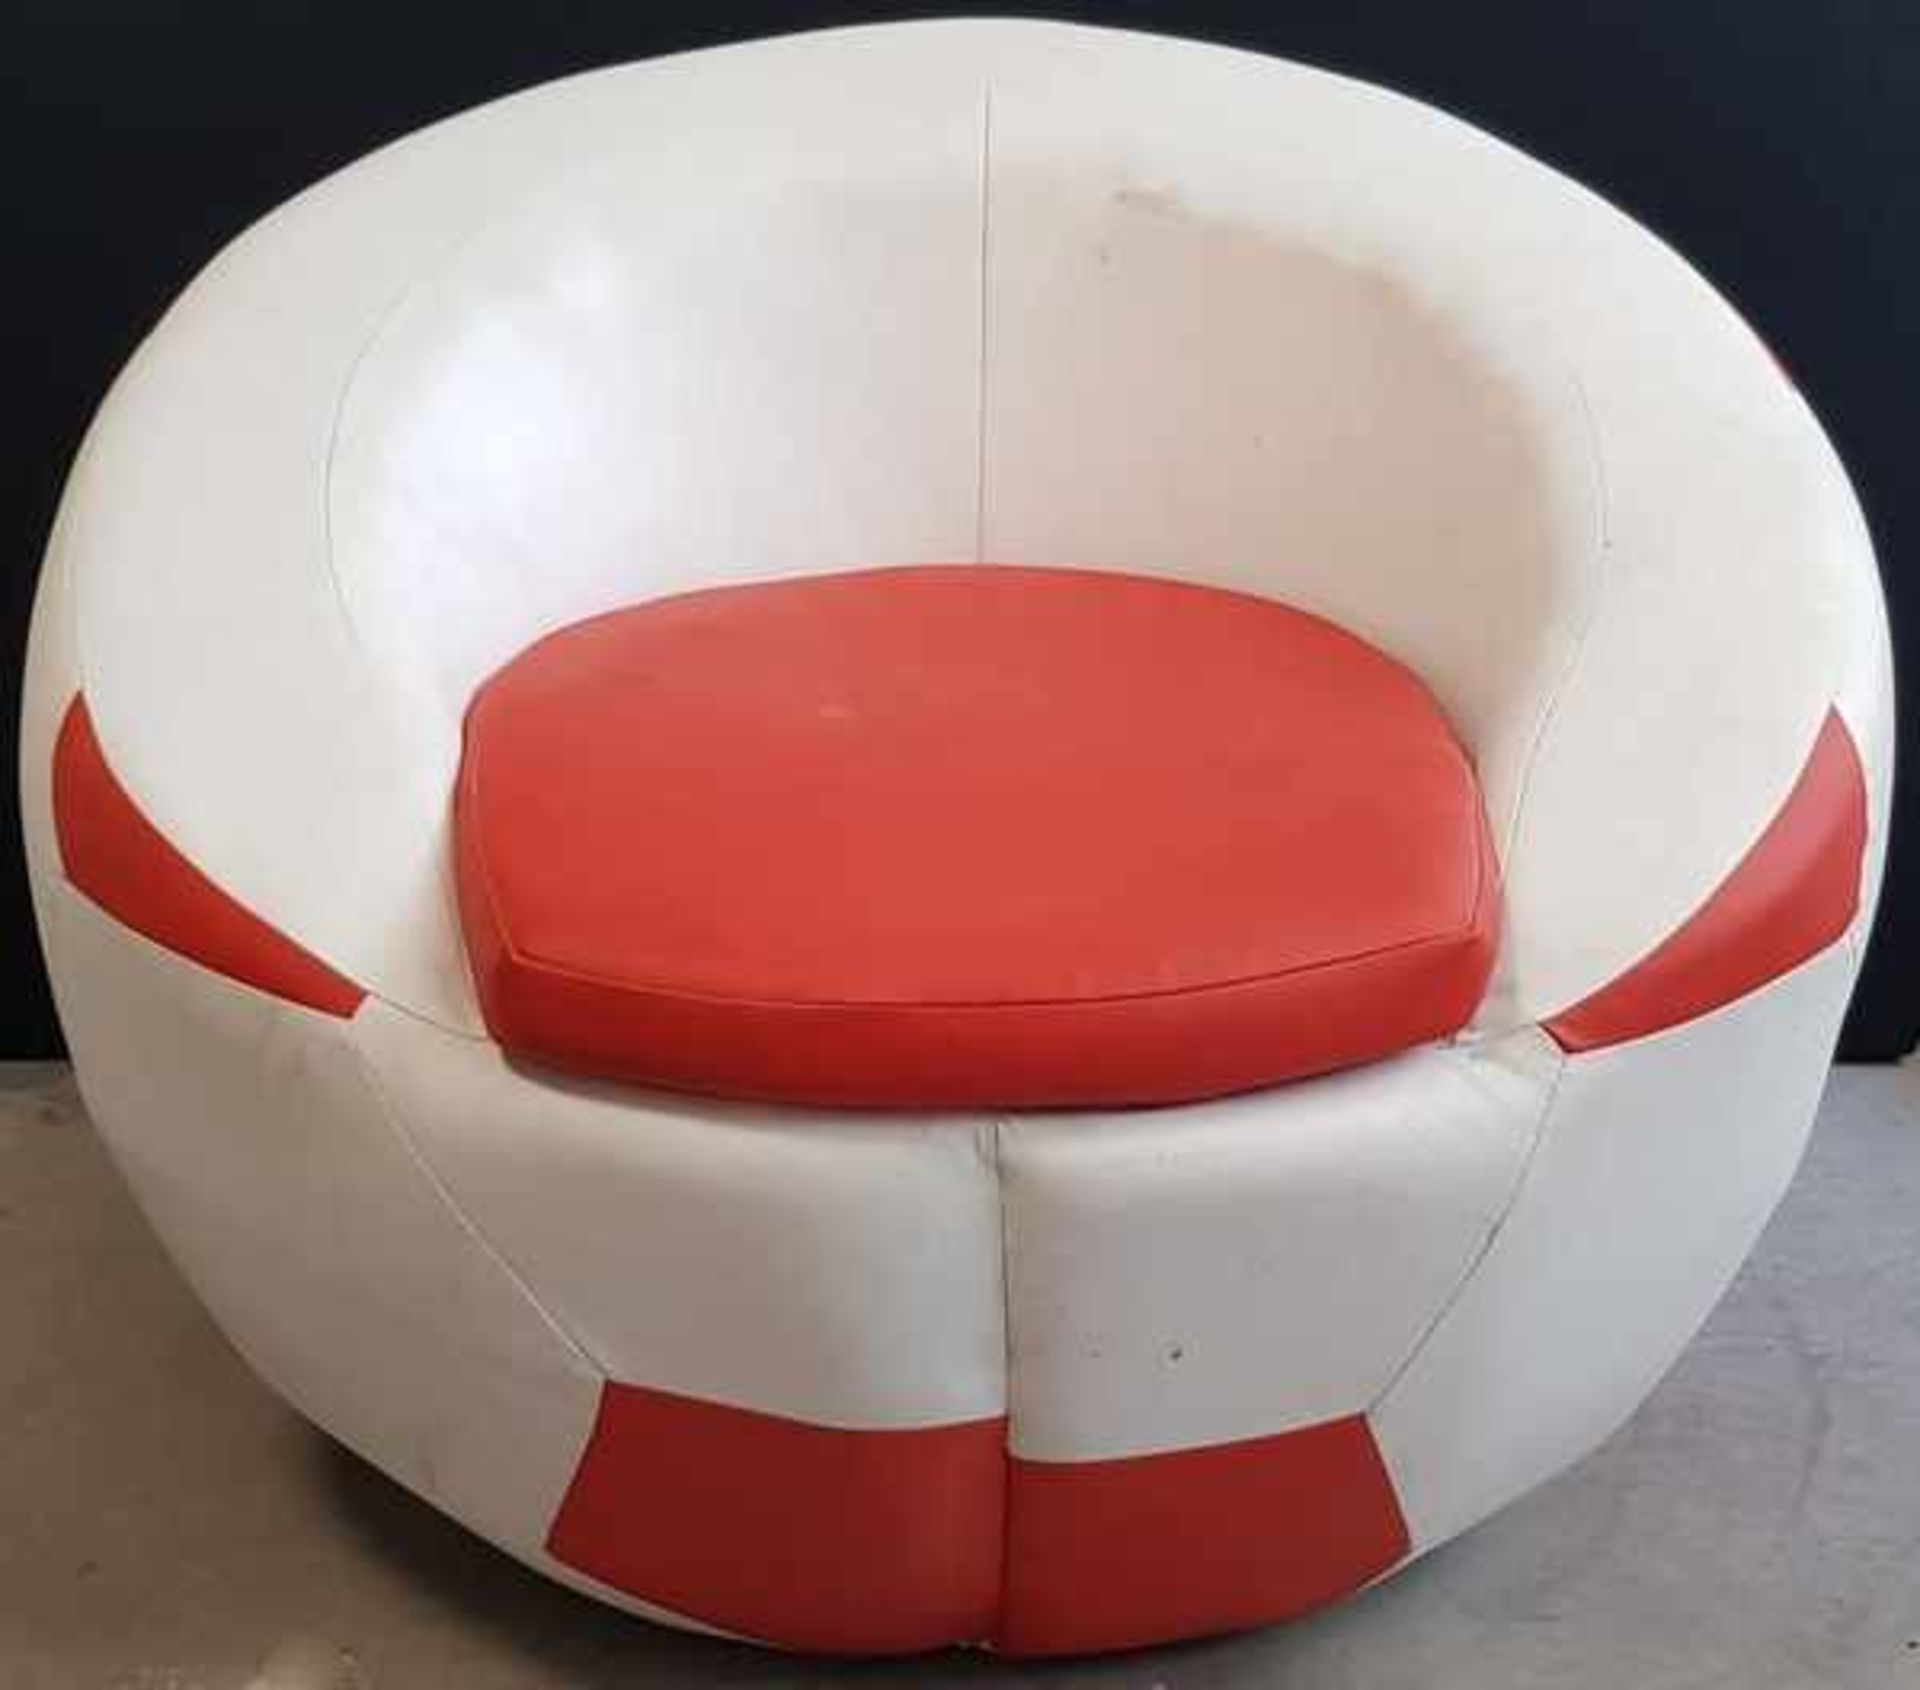 (Curiosa) Voetbal stoelRood/witte voetbal stoel. Conditie: In redelijke staat. Afmetingen: Hoogte 82